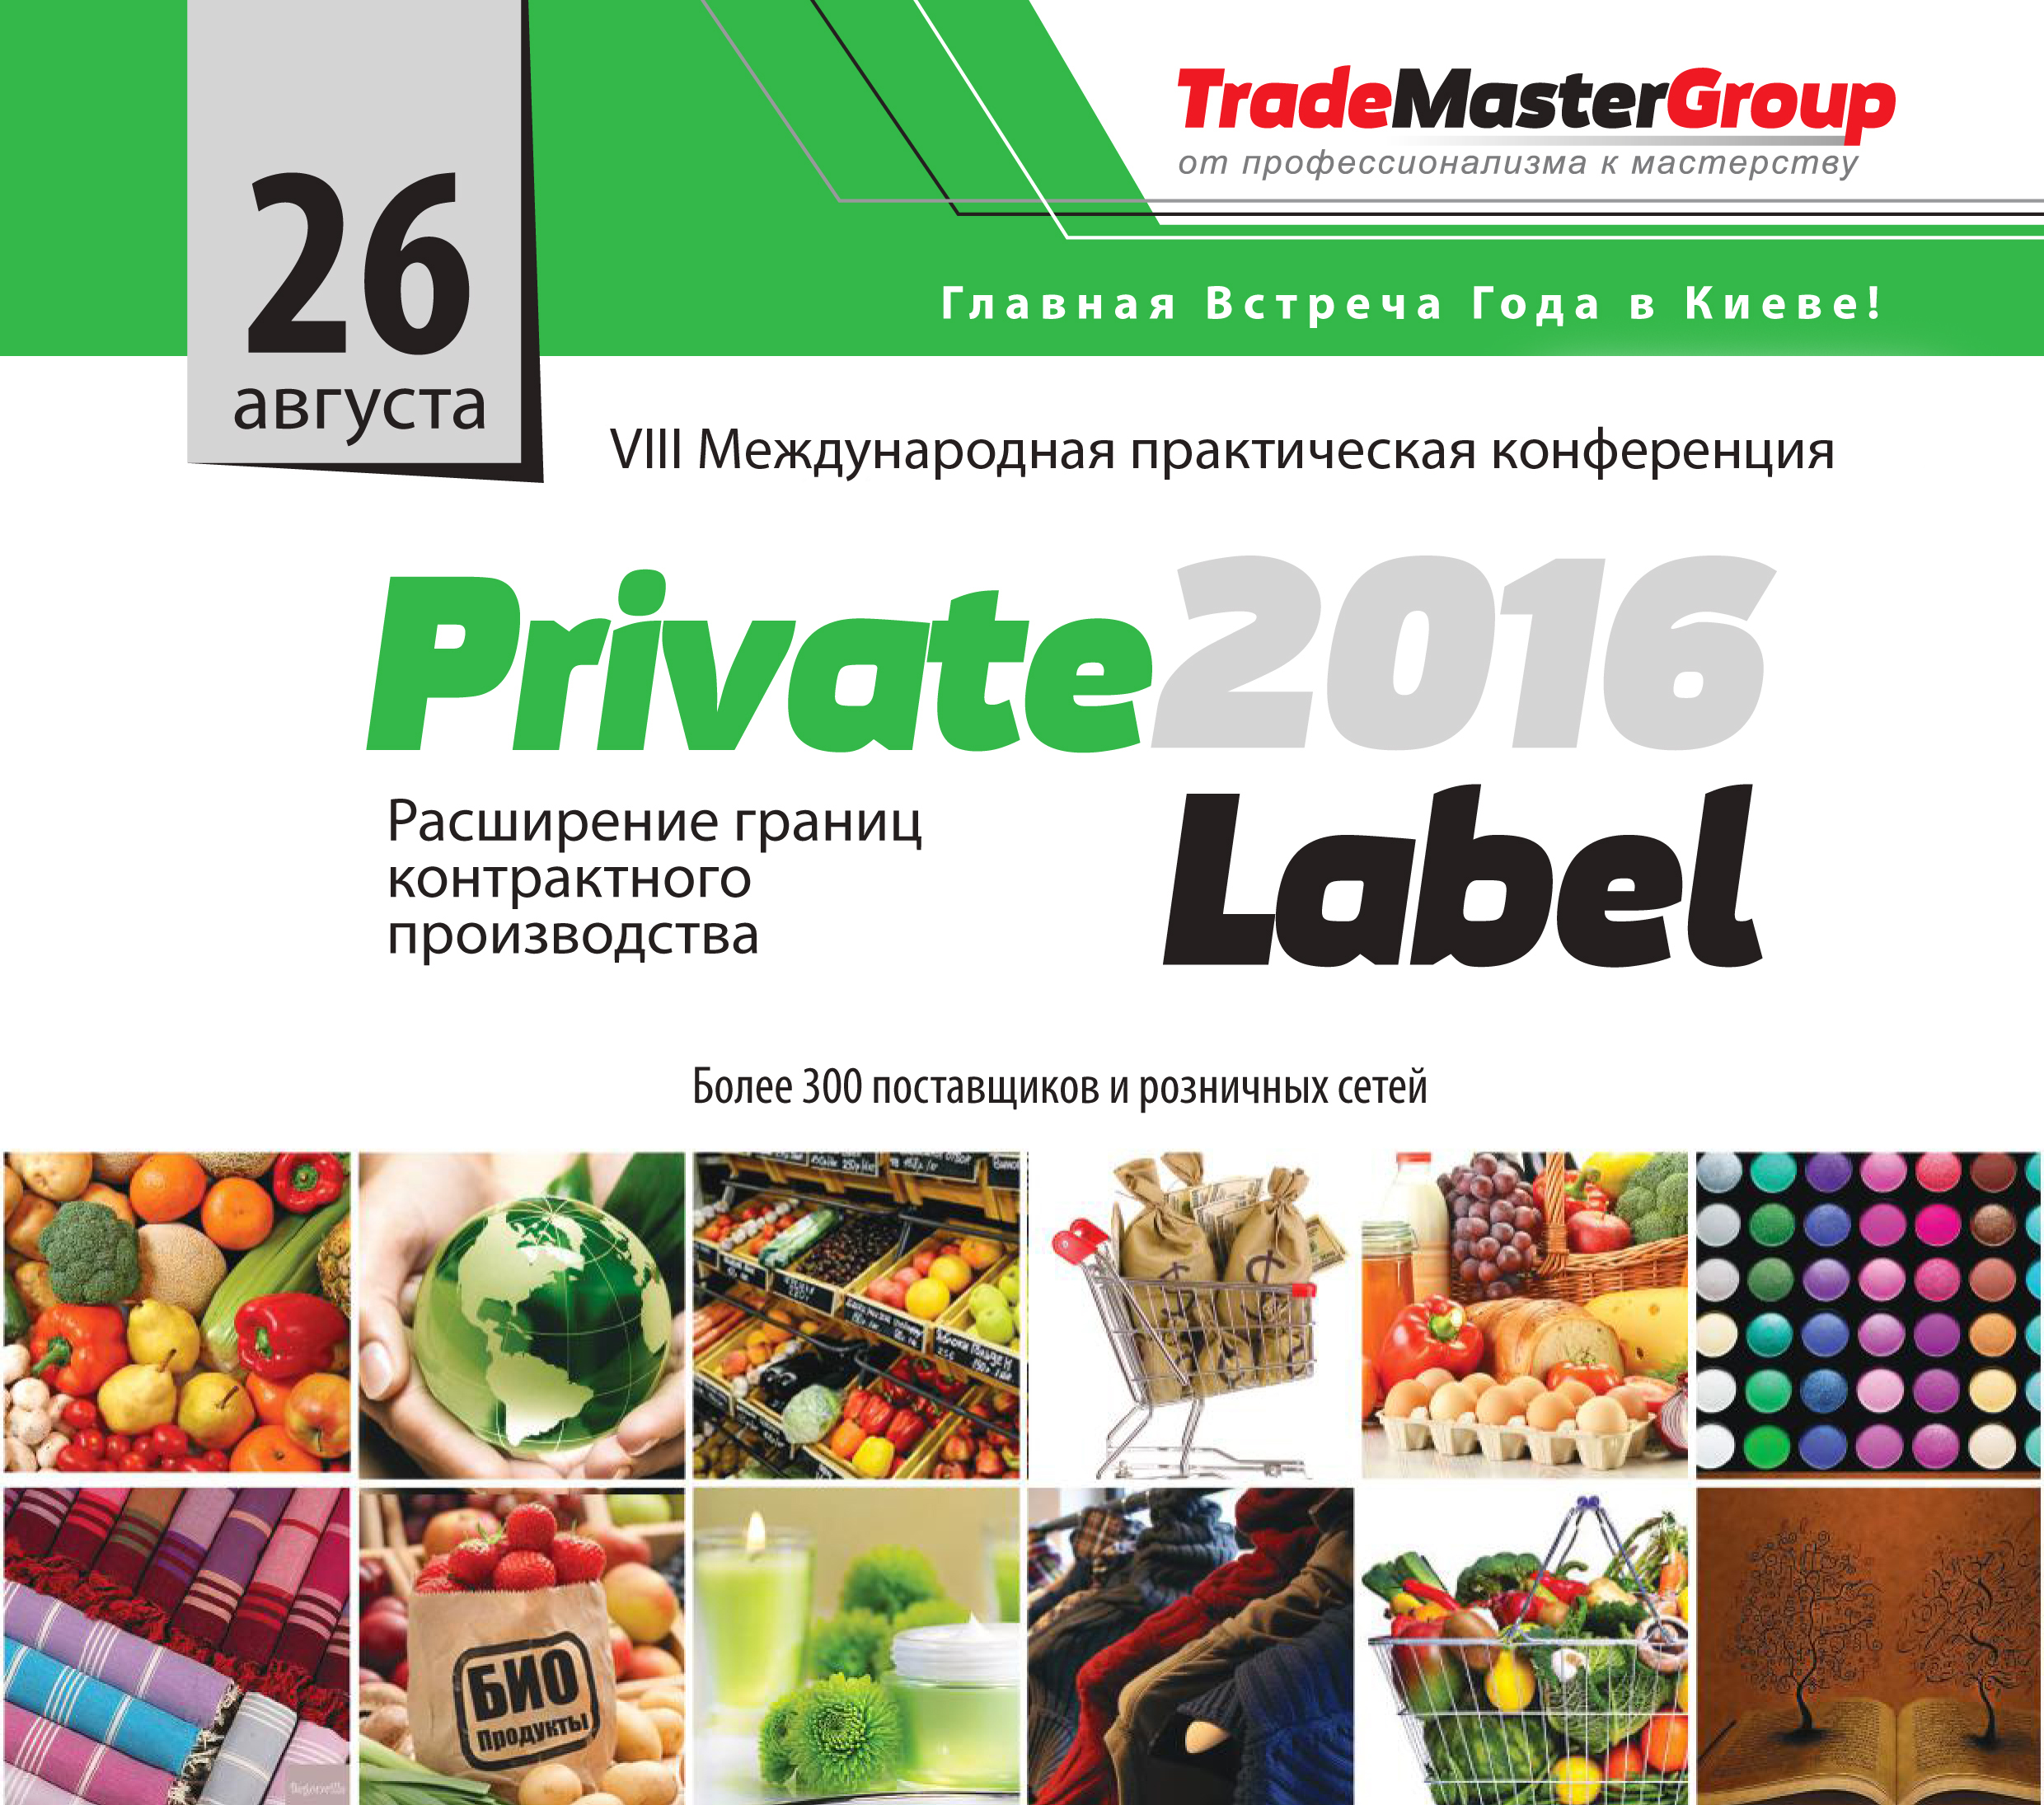  26 августа, Ежегодная Международная встреча ритейла и поставщиков "PrivateLabel-2016"